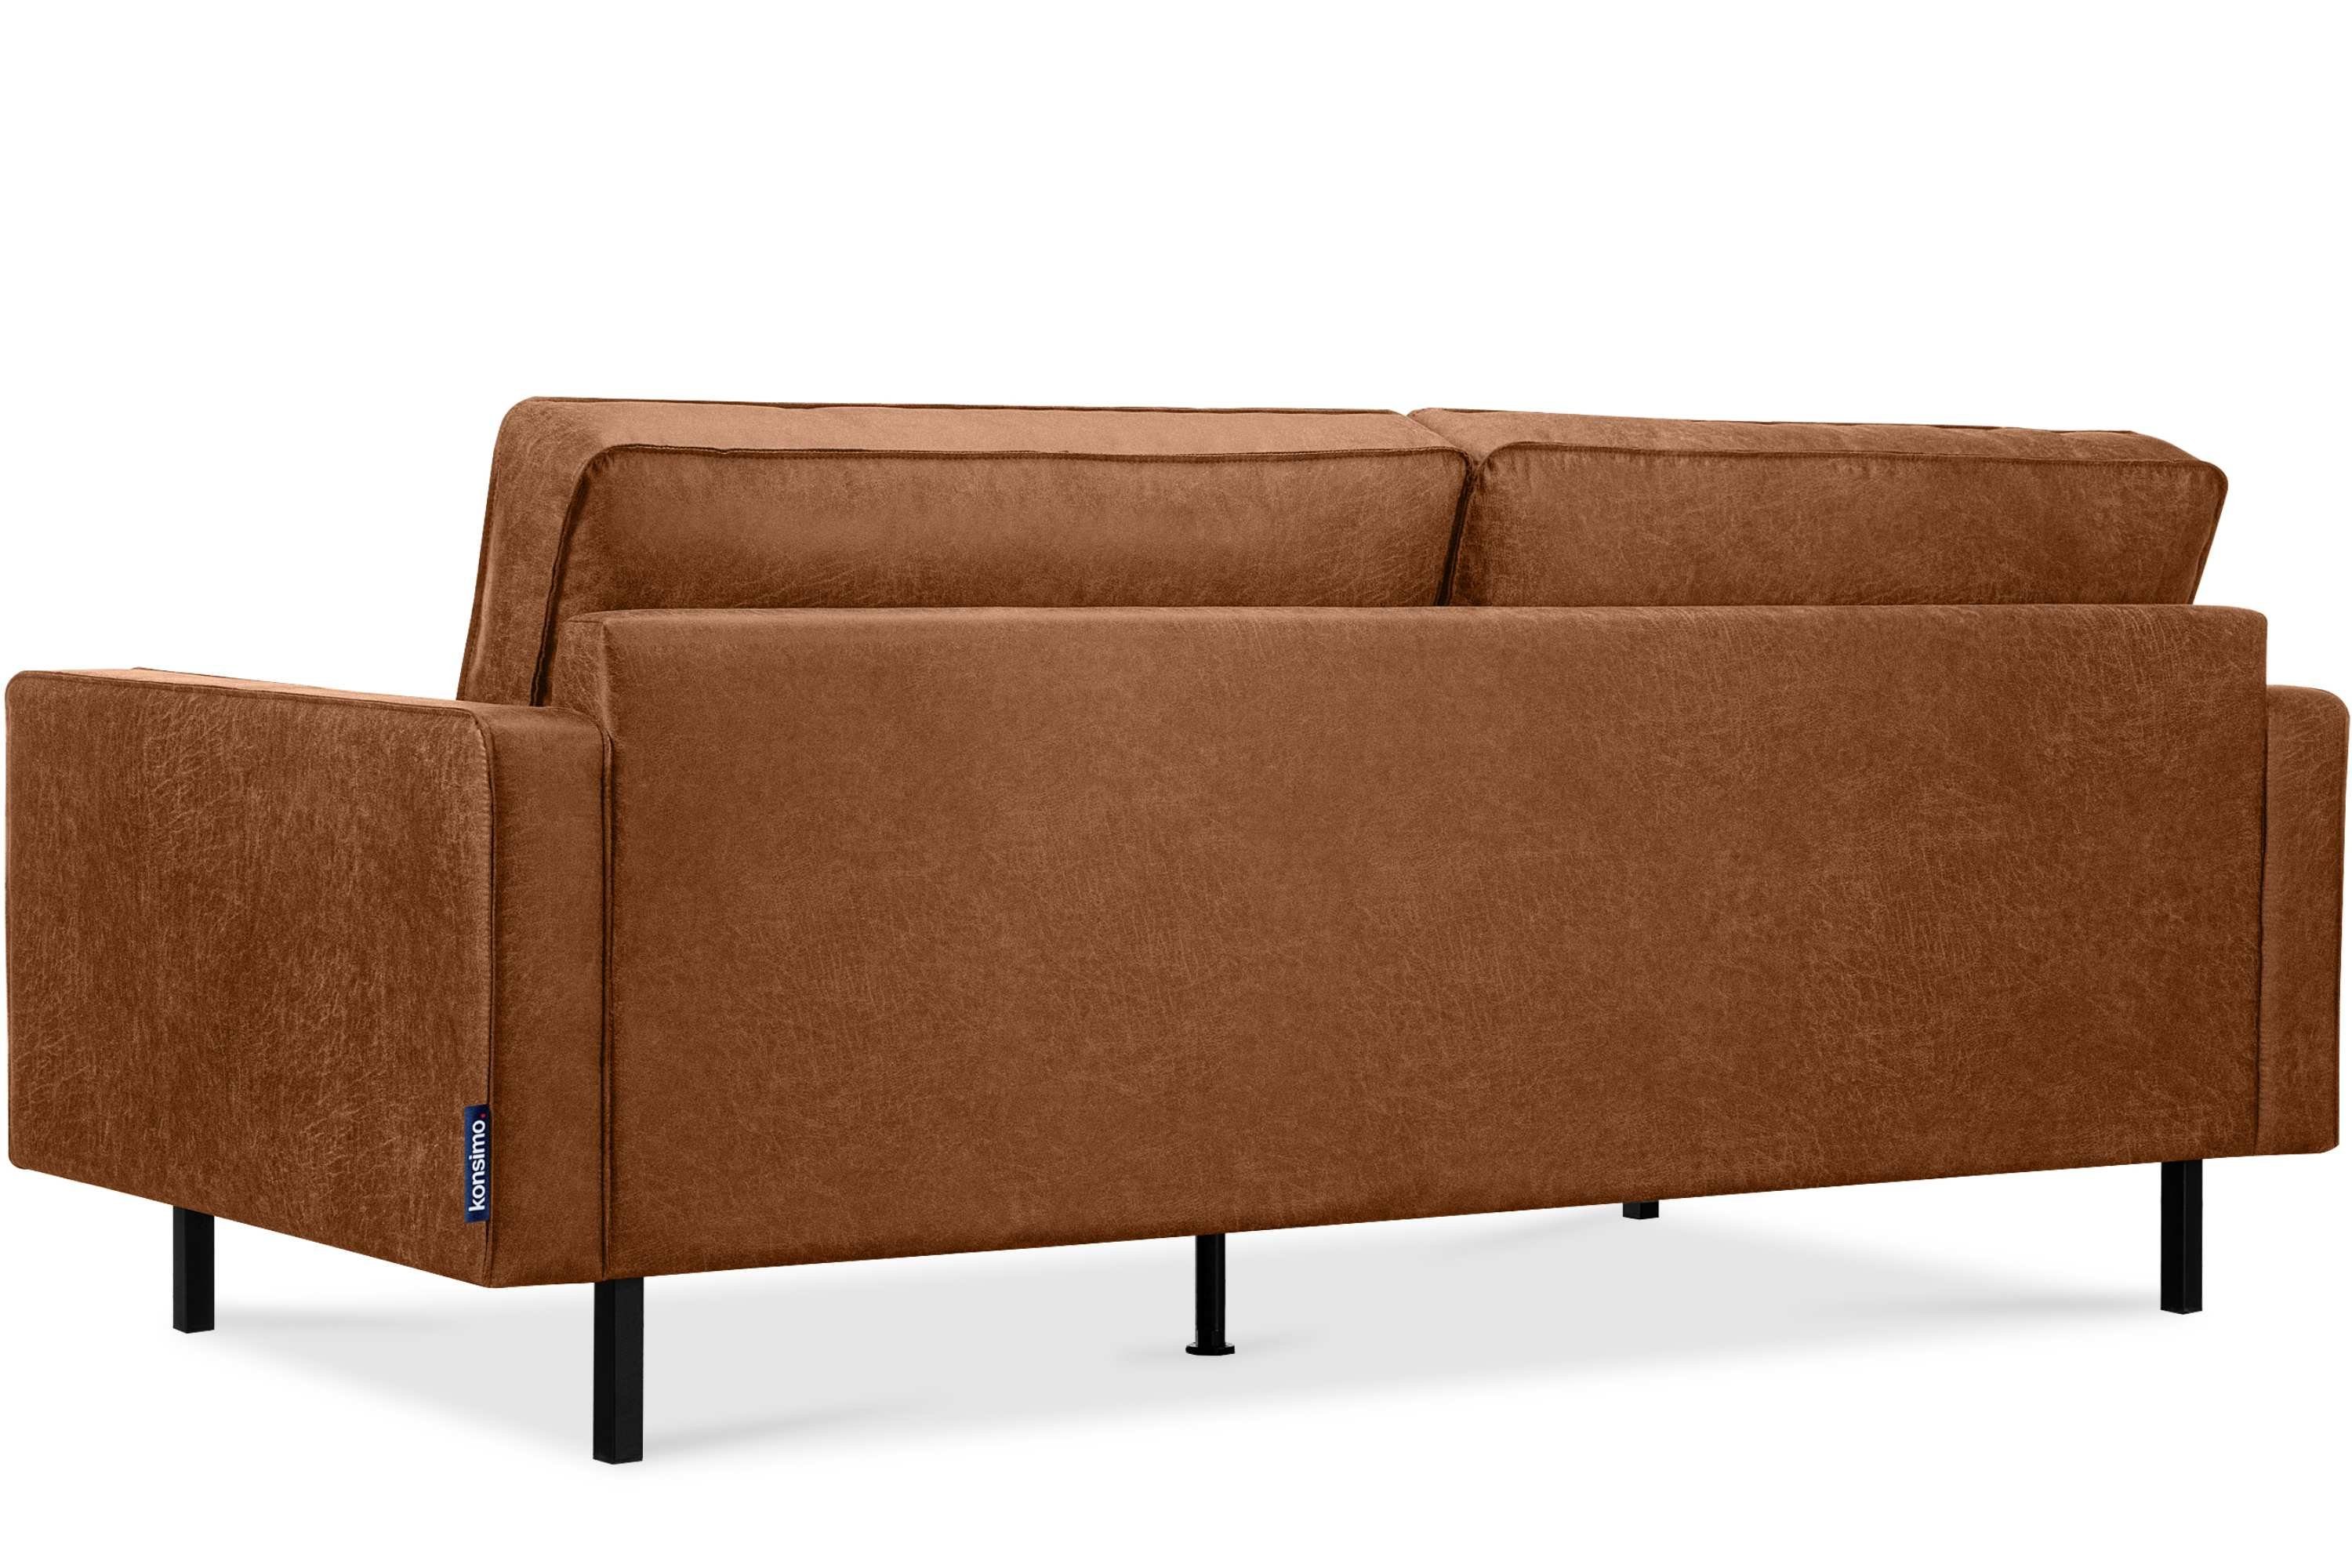 | Echtleder, rot Metallfüßen, Dreisitzer-Sofa, rot | hohen Konsimo auf EU in INVIA Hergestellt 3-Sitzer Grundschicht: rot